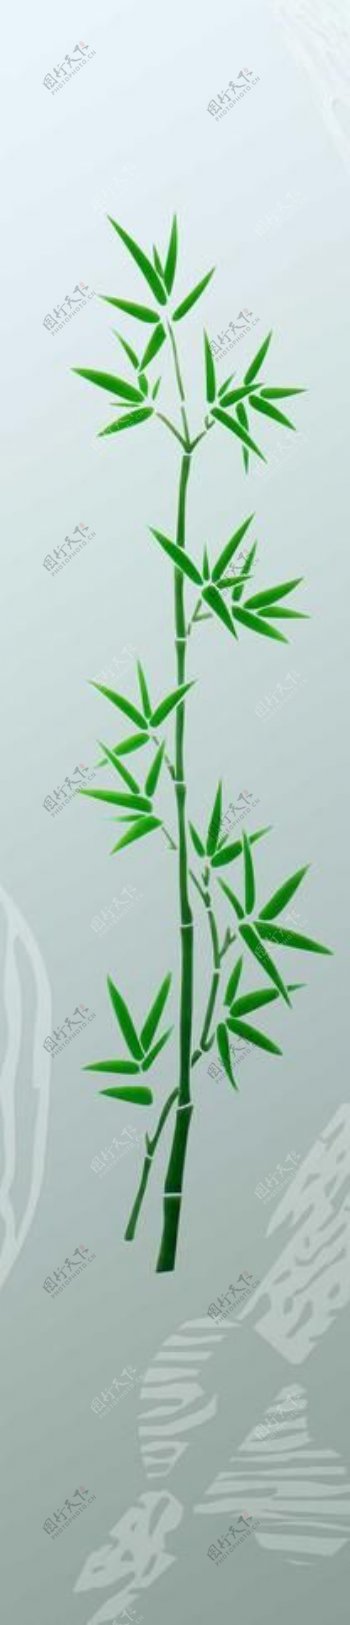 竹子图案